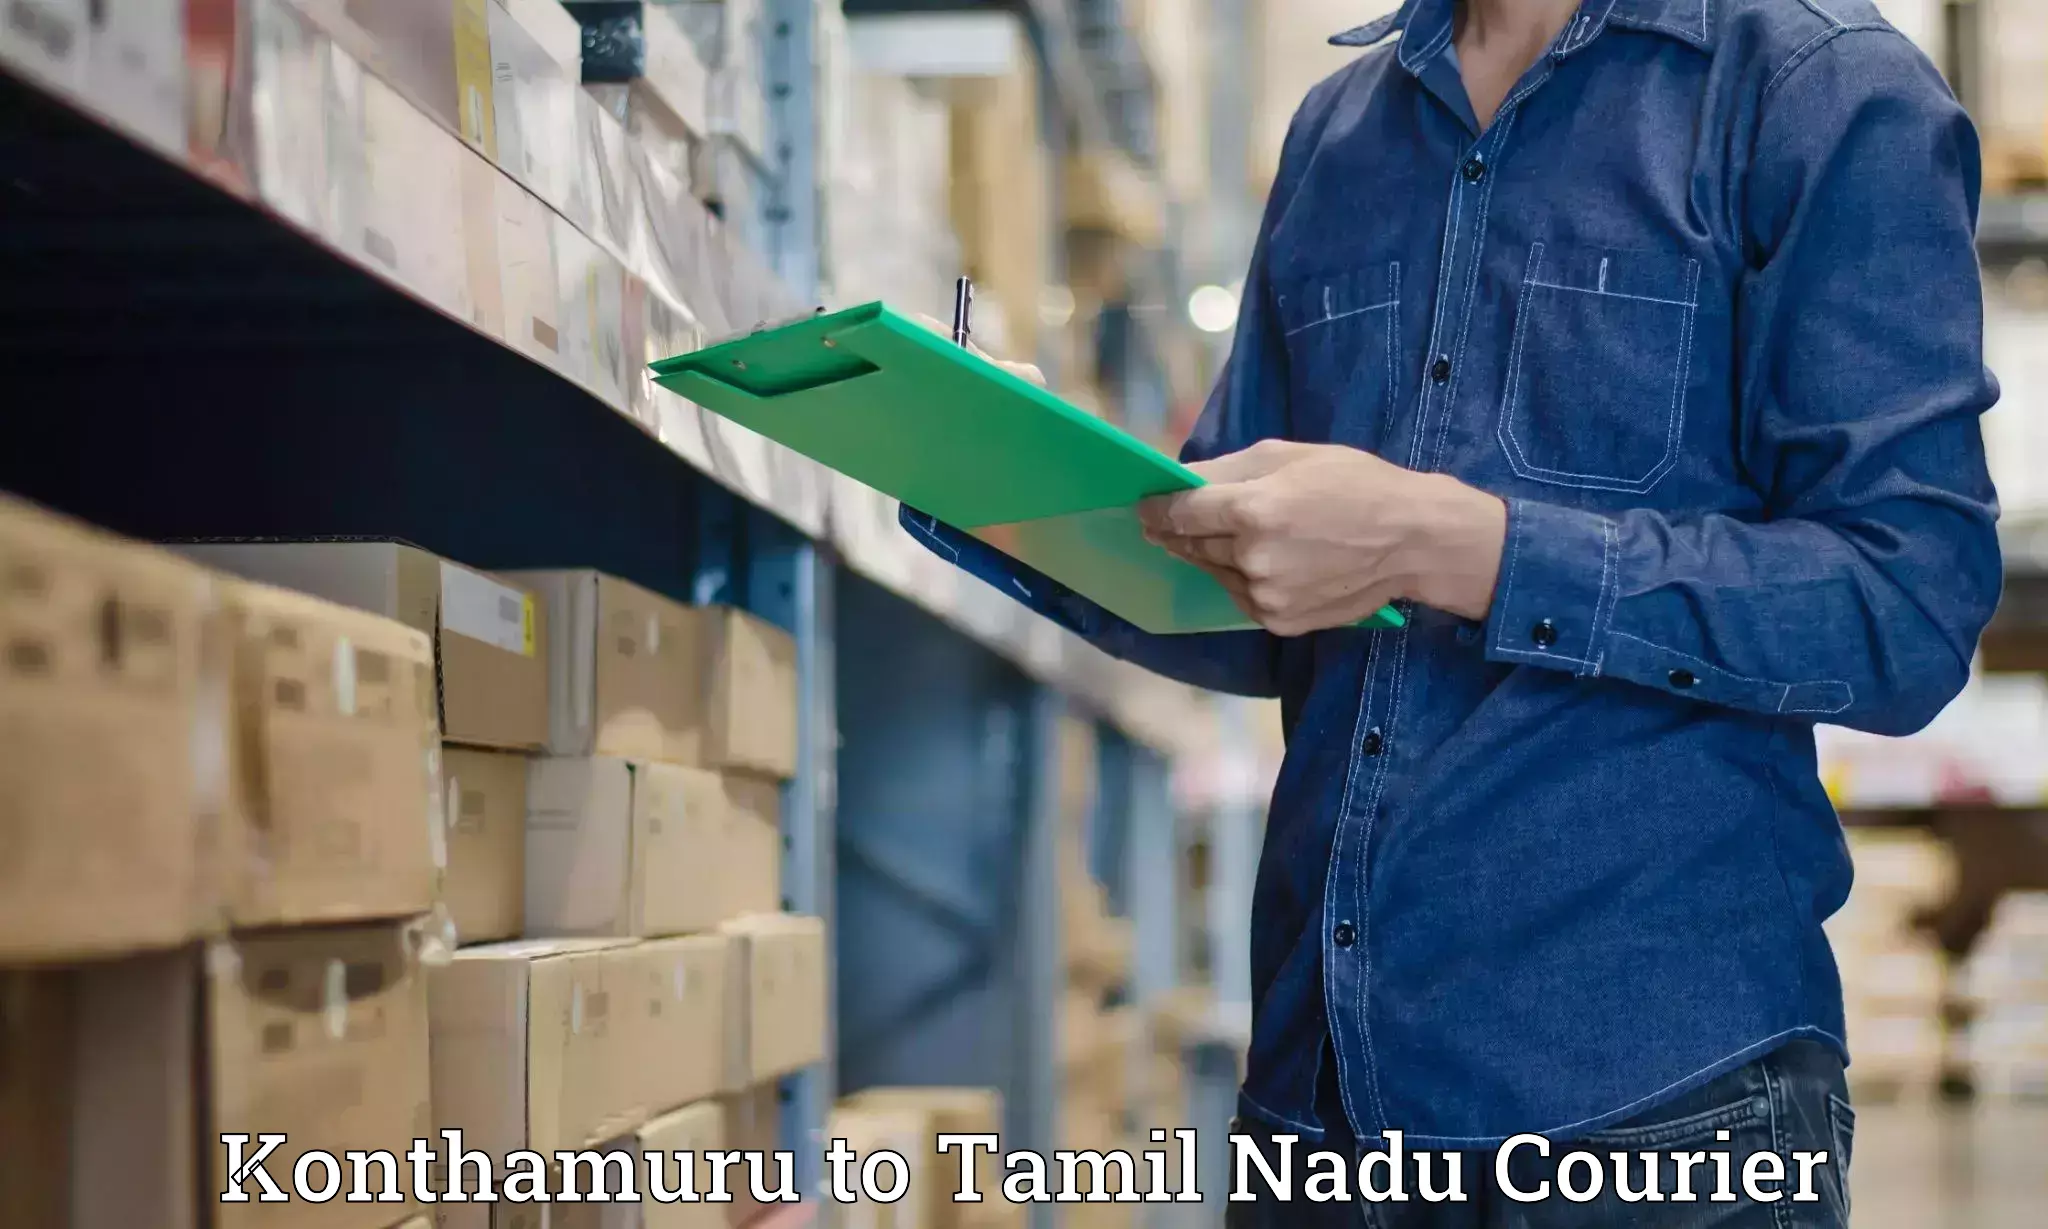 Nationwide delivery network Konthamuru to Ambattur